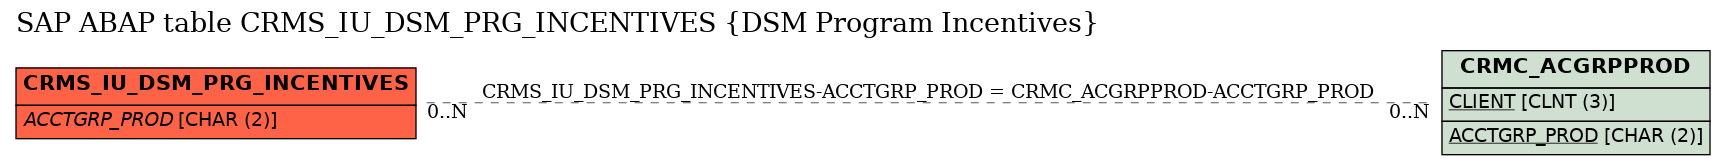 E-R Diagram for table CRMS_IU_DSM_PRG_INCENTIVES (DSM Program Incentives)